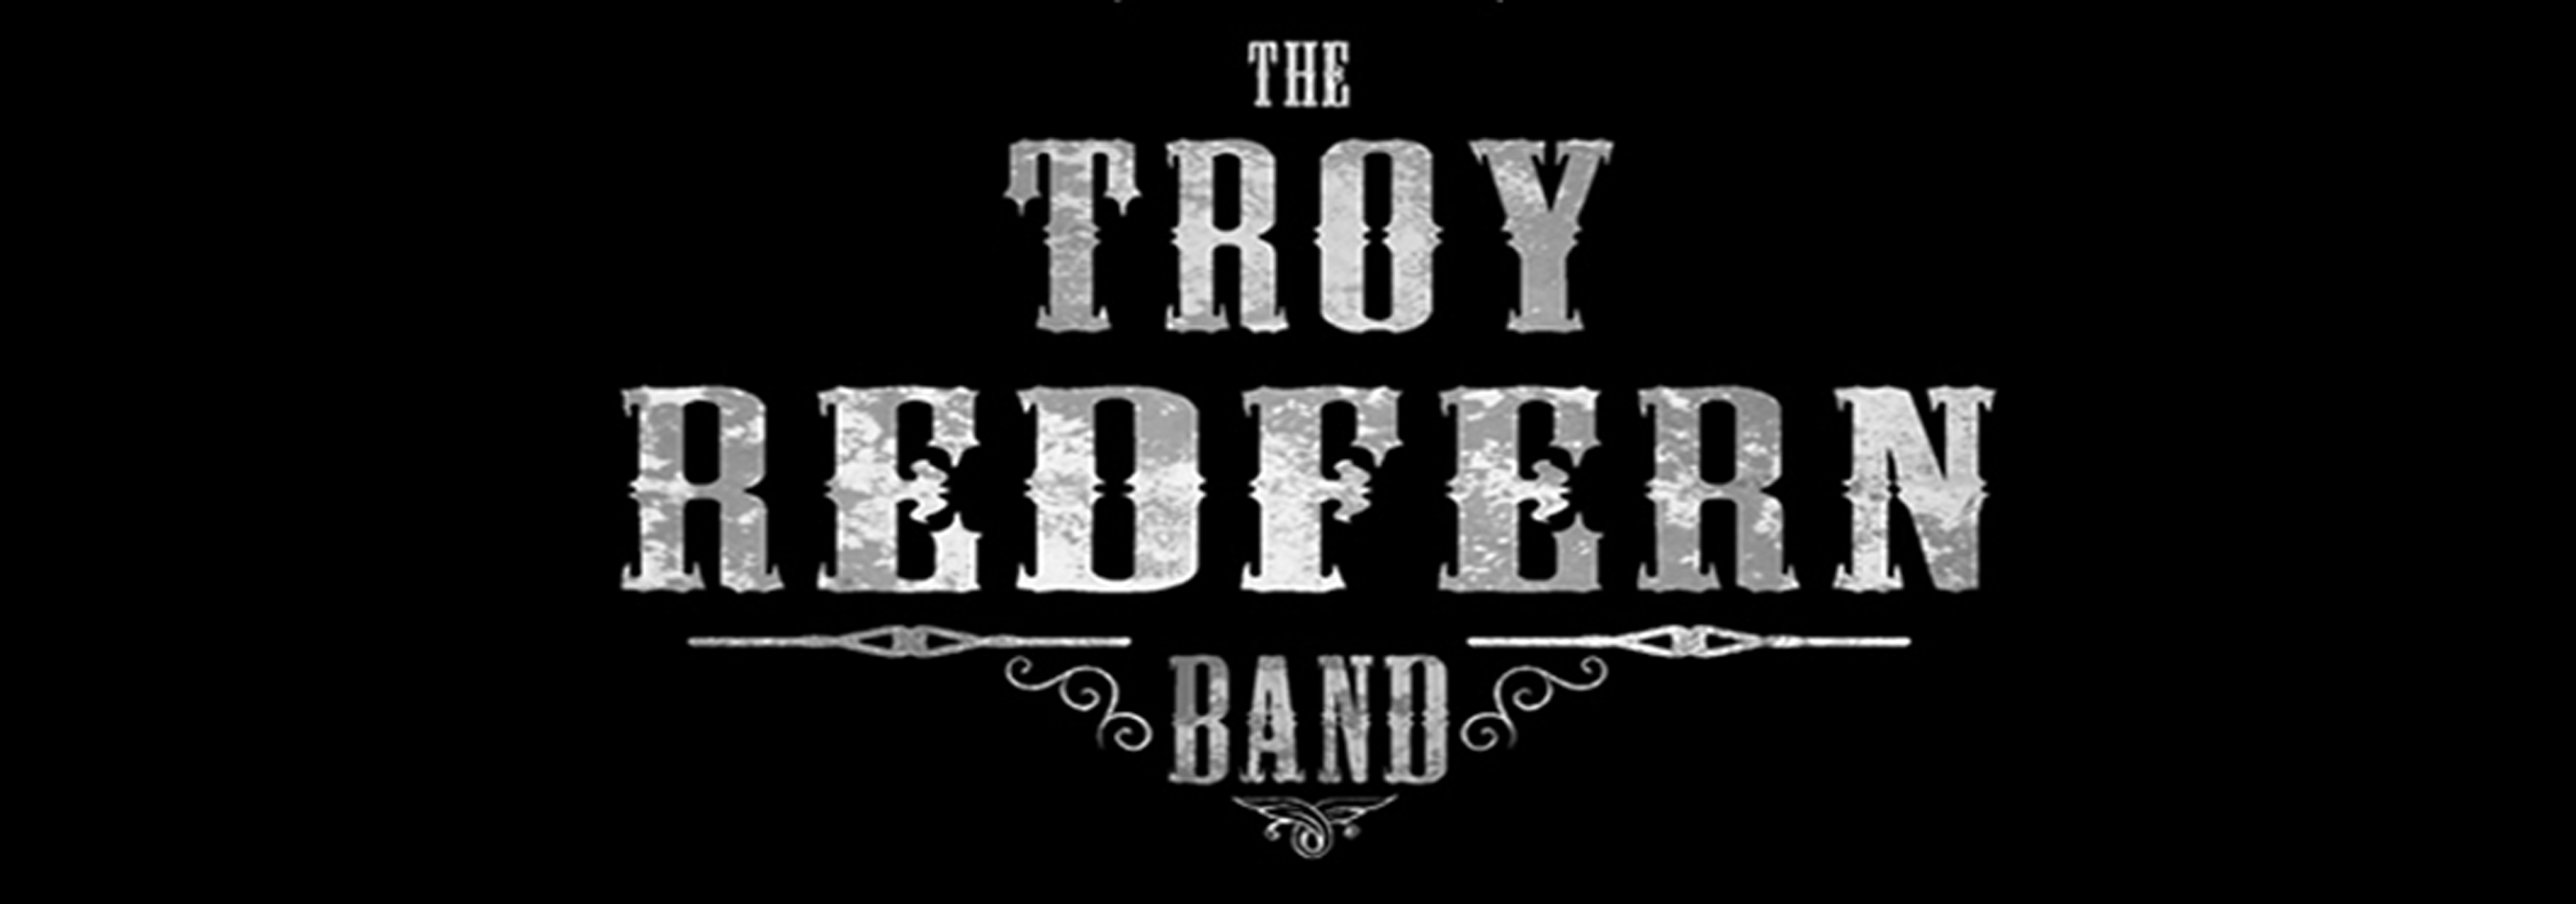 Troy redfern band